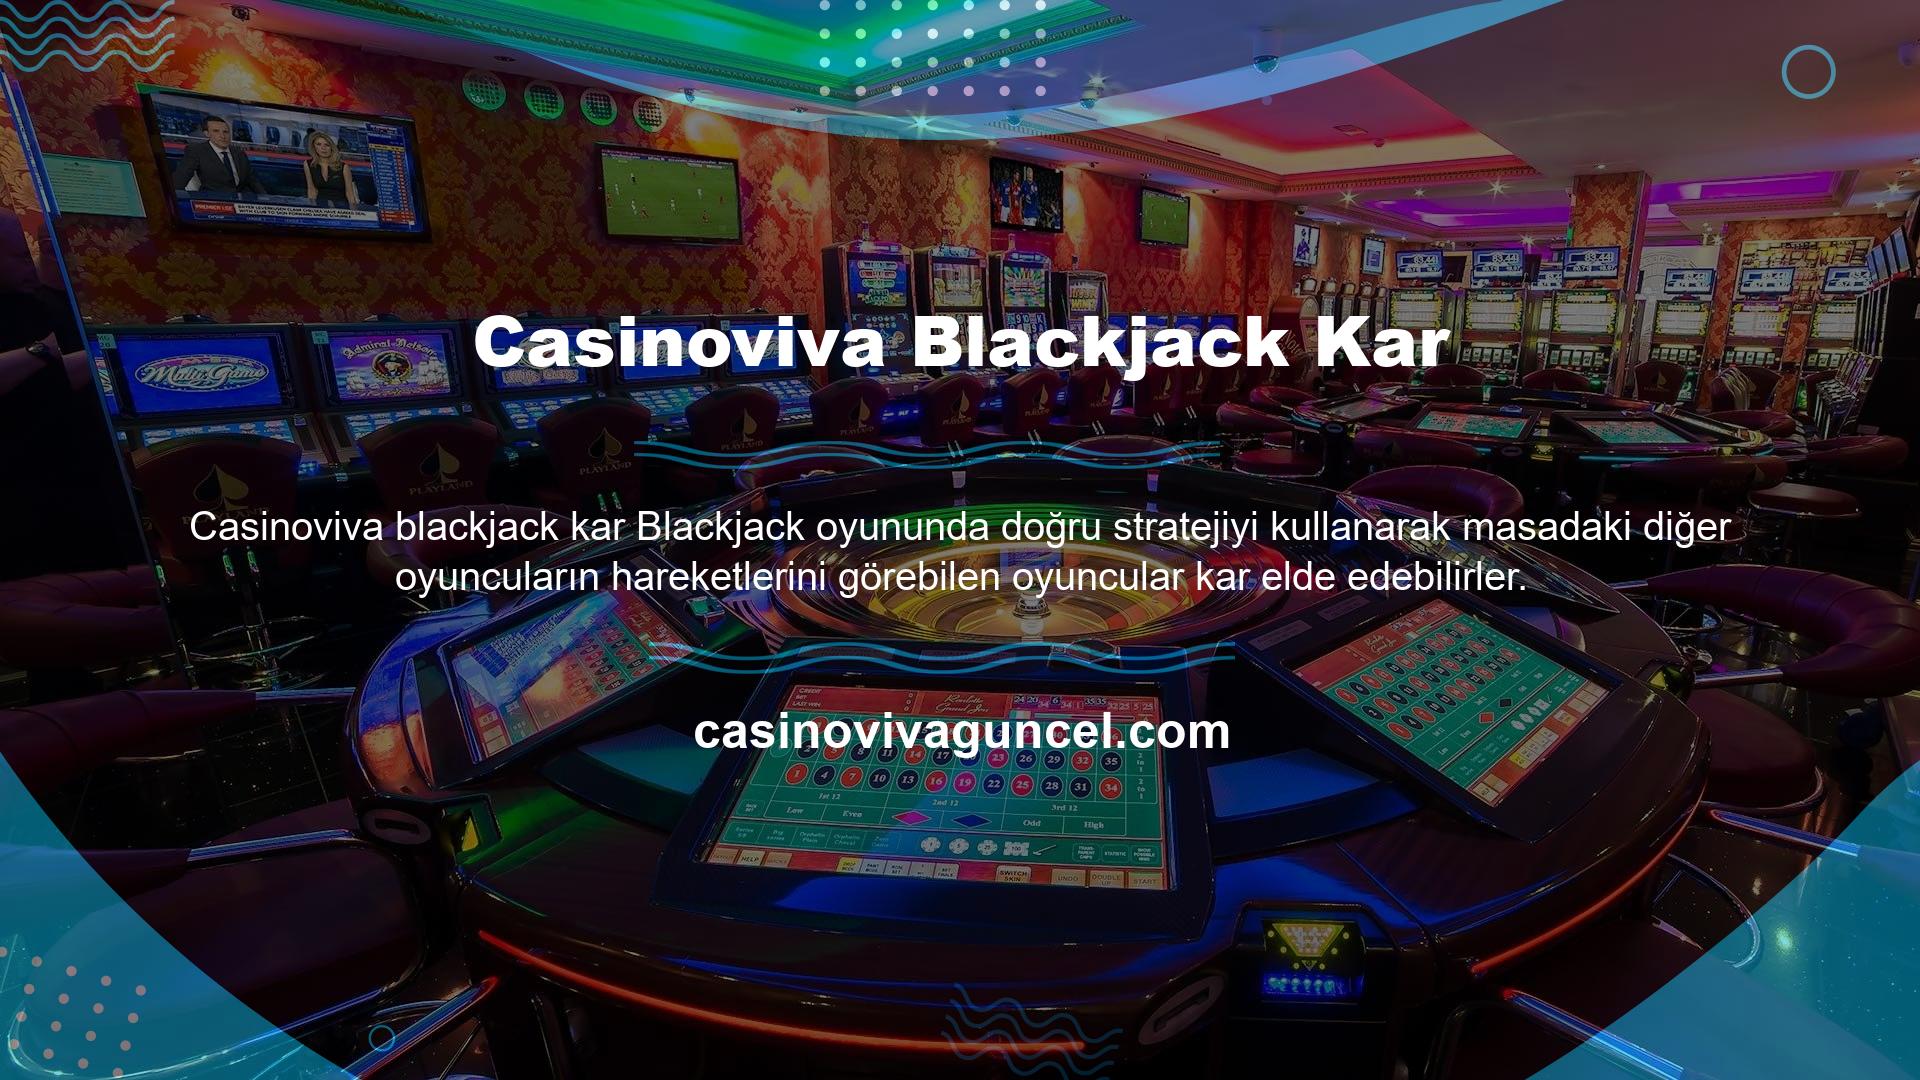 Casinoviva kullanıcıları, blackjack kazançlarını güvence altına almak ve daha fazla kazanma şanslarını korumak için bahis stratejilerini kullanır